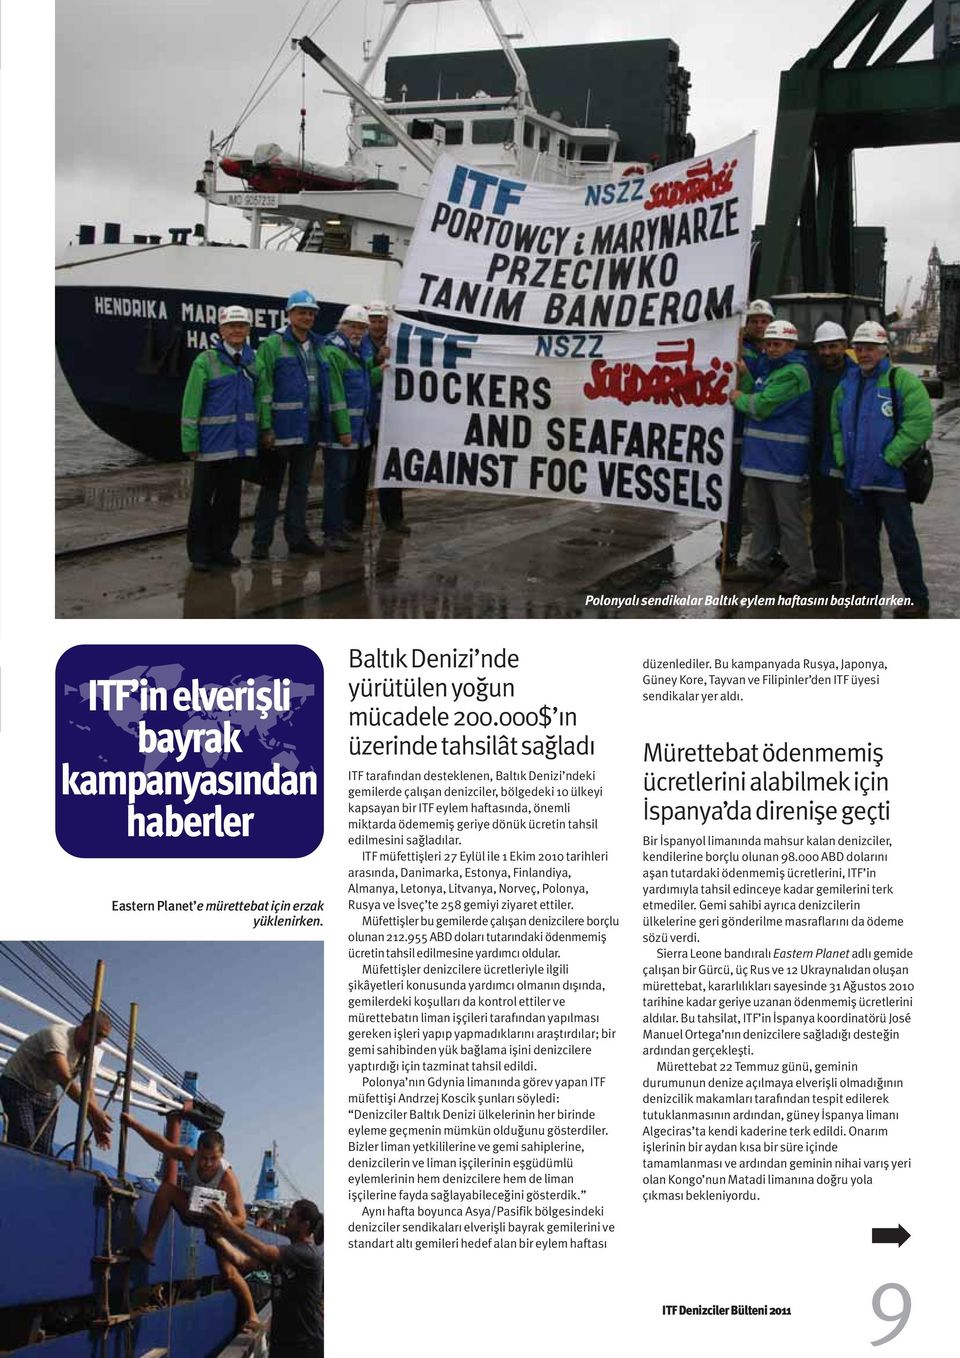 000$ ın üzerinde tahsilât sağladı ITF tarafından desteklenen, Baltık Denizi ndeki gemilerde çalışan denizciler, bölgedeki 10 ülkeyi kapsayan bir ITF eylem haftasında, önemli miktarda ödememiş geriye